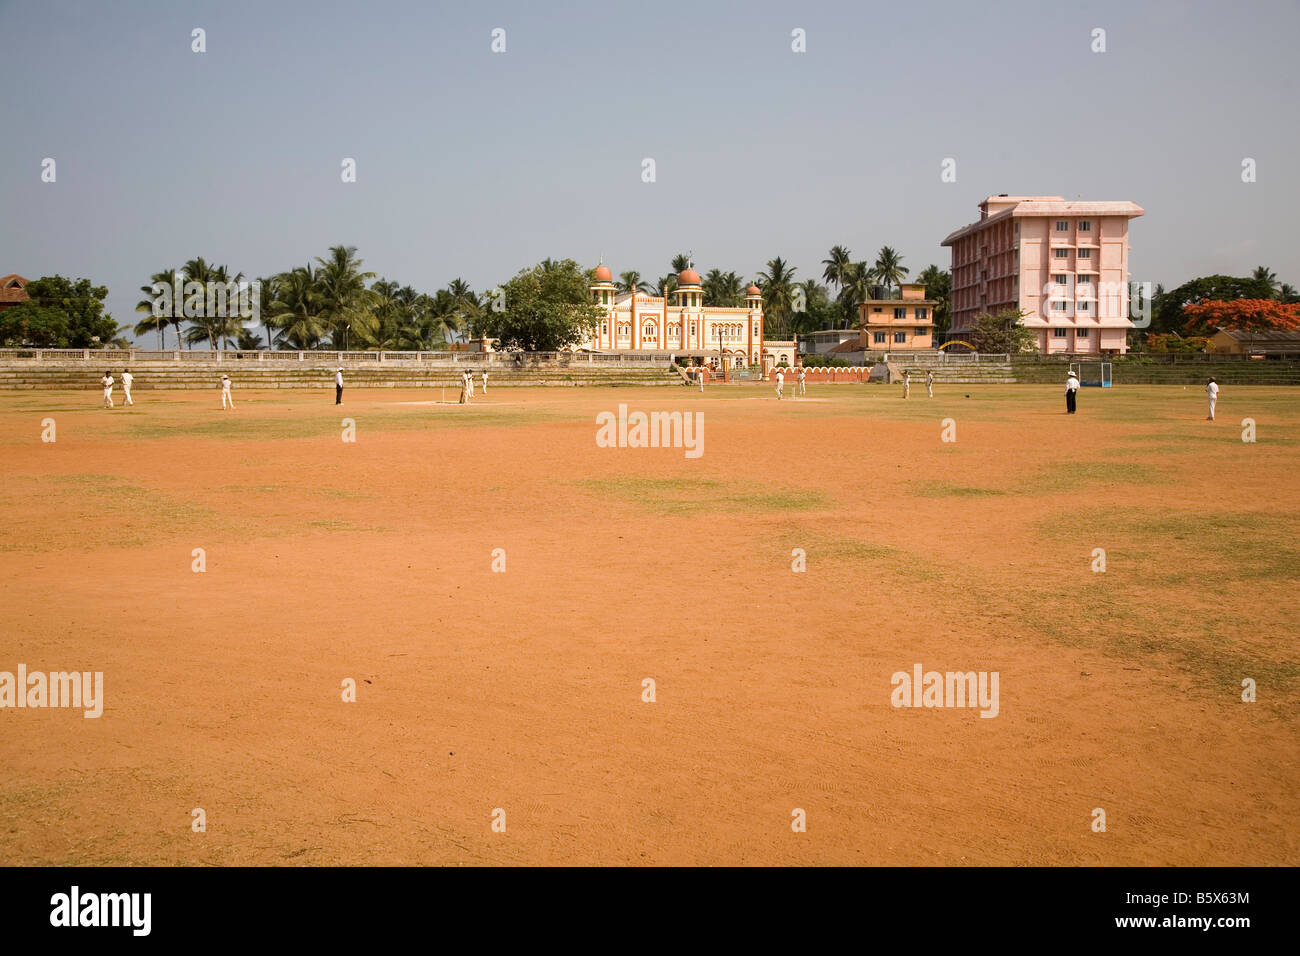 Le Cricket se joue sur un guichet poussiéreux à Thalassery au Kerala, en Inde. Banque D'Images